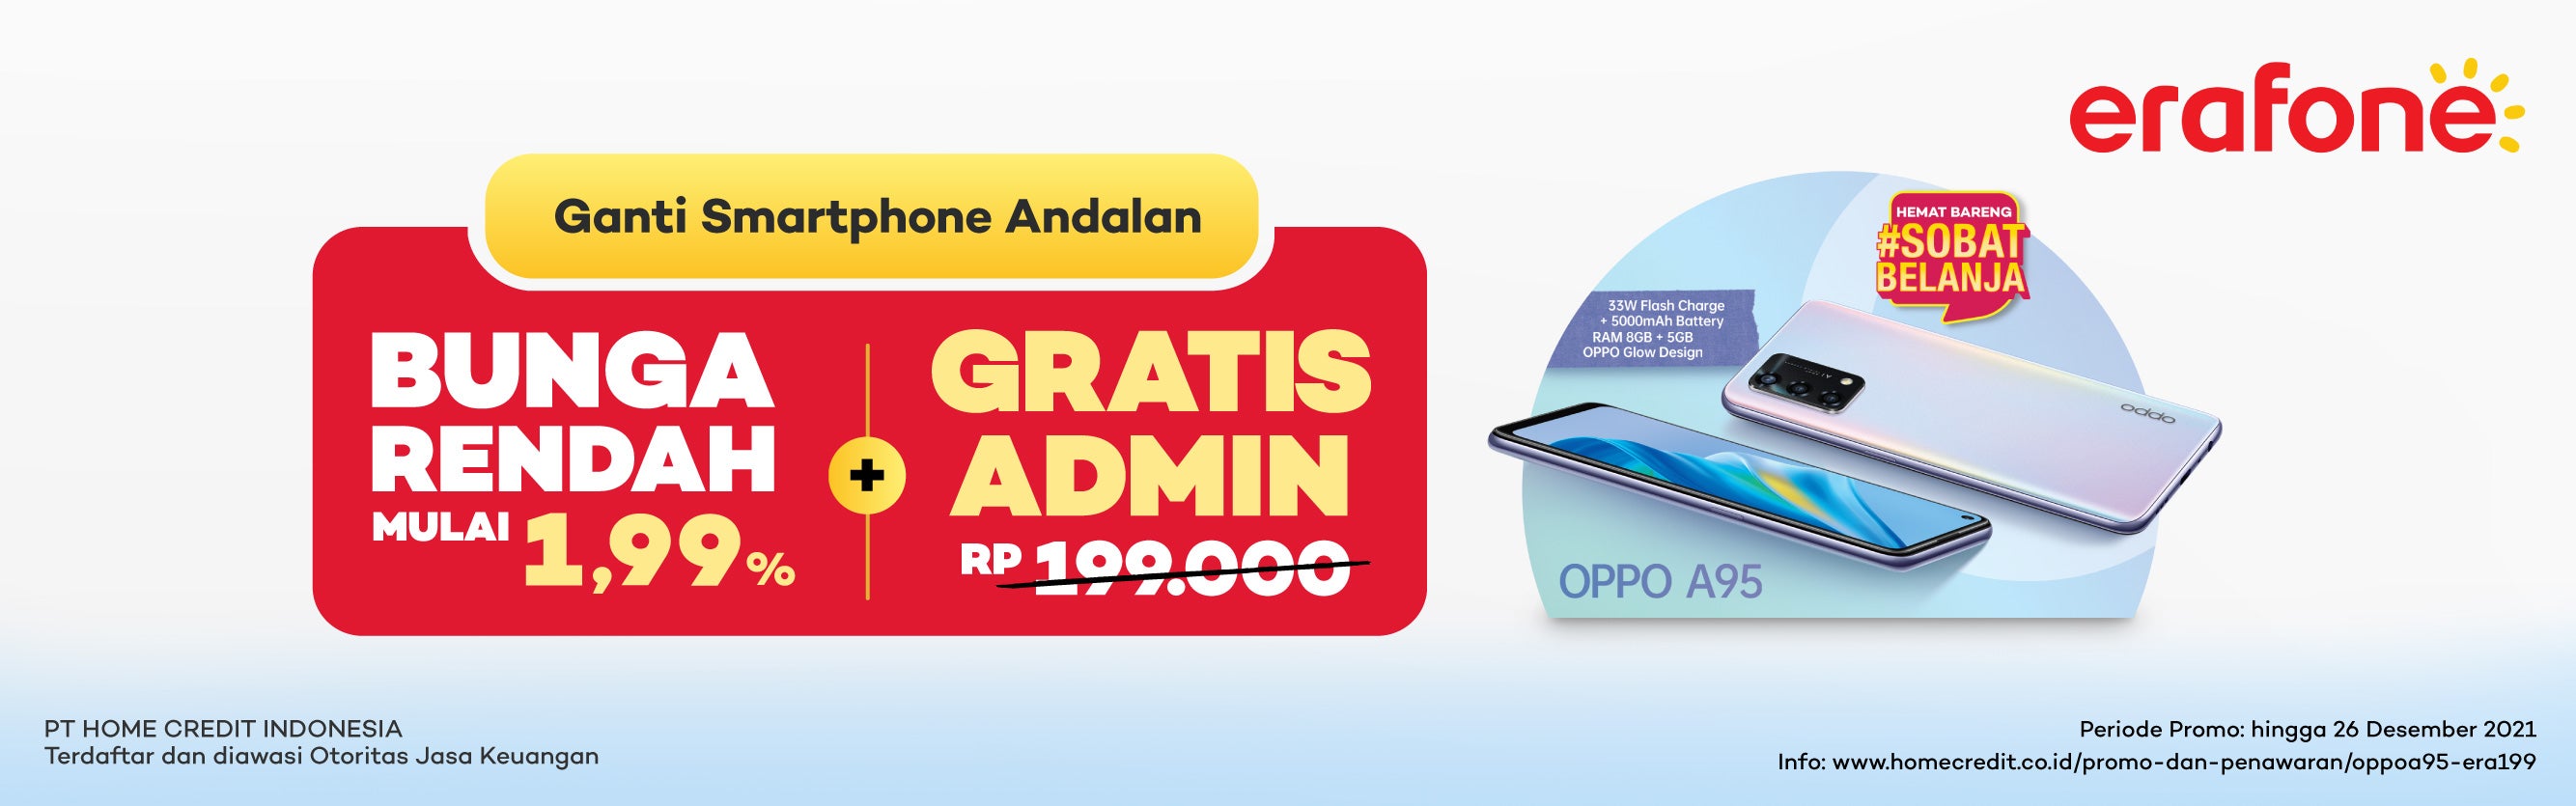 Promo OPPO: Bunga Rendah mulai 1,99% + Gratis Biaya Admin di Erafone